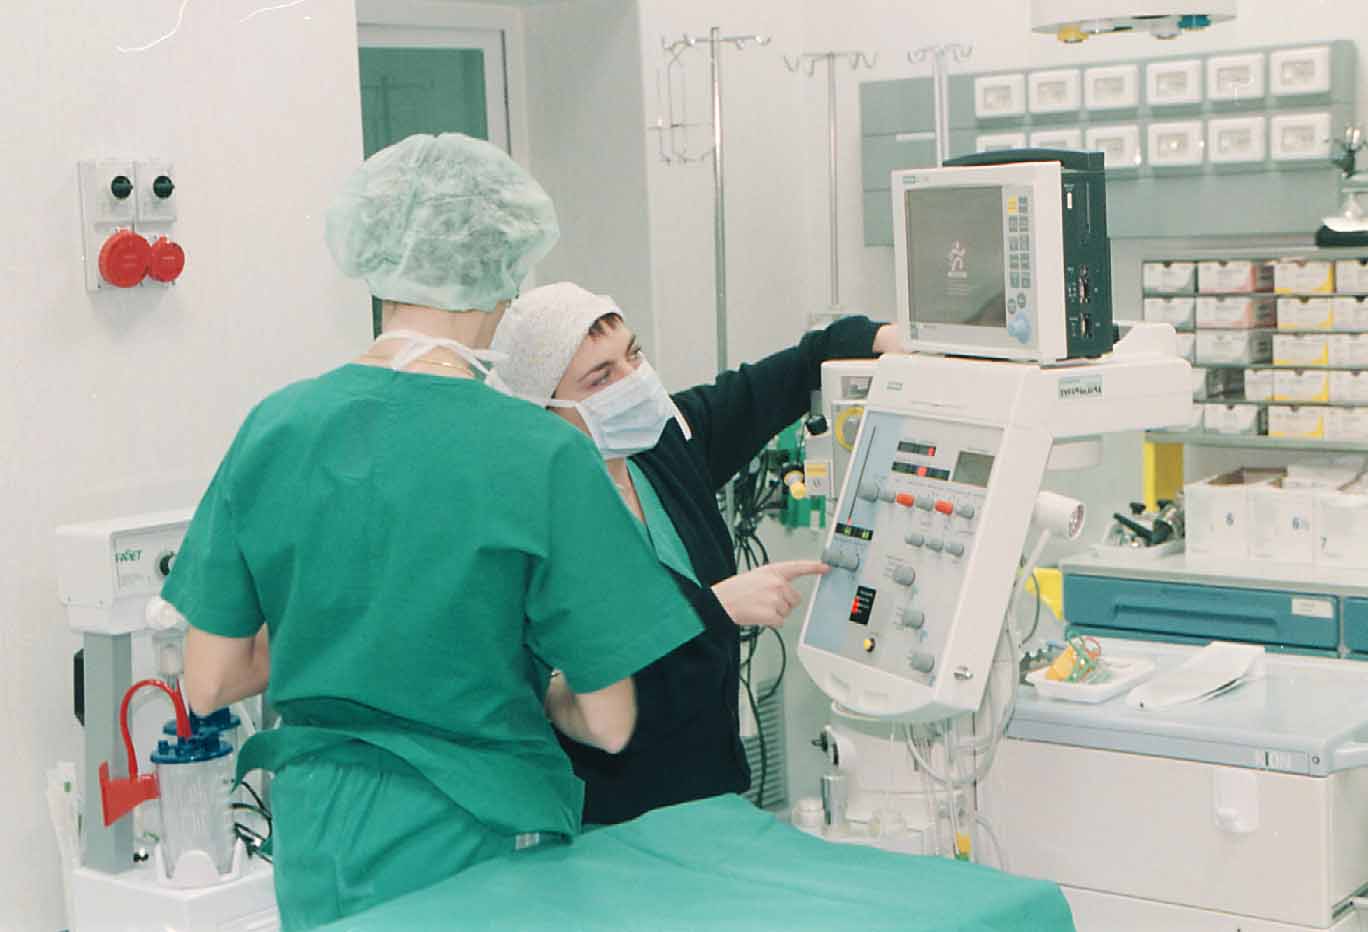 Tumori naso-sinusali, la Regione Toscana avvia sorveglianza sperimentale su 240 lavoratori 